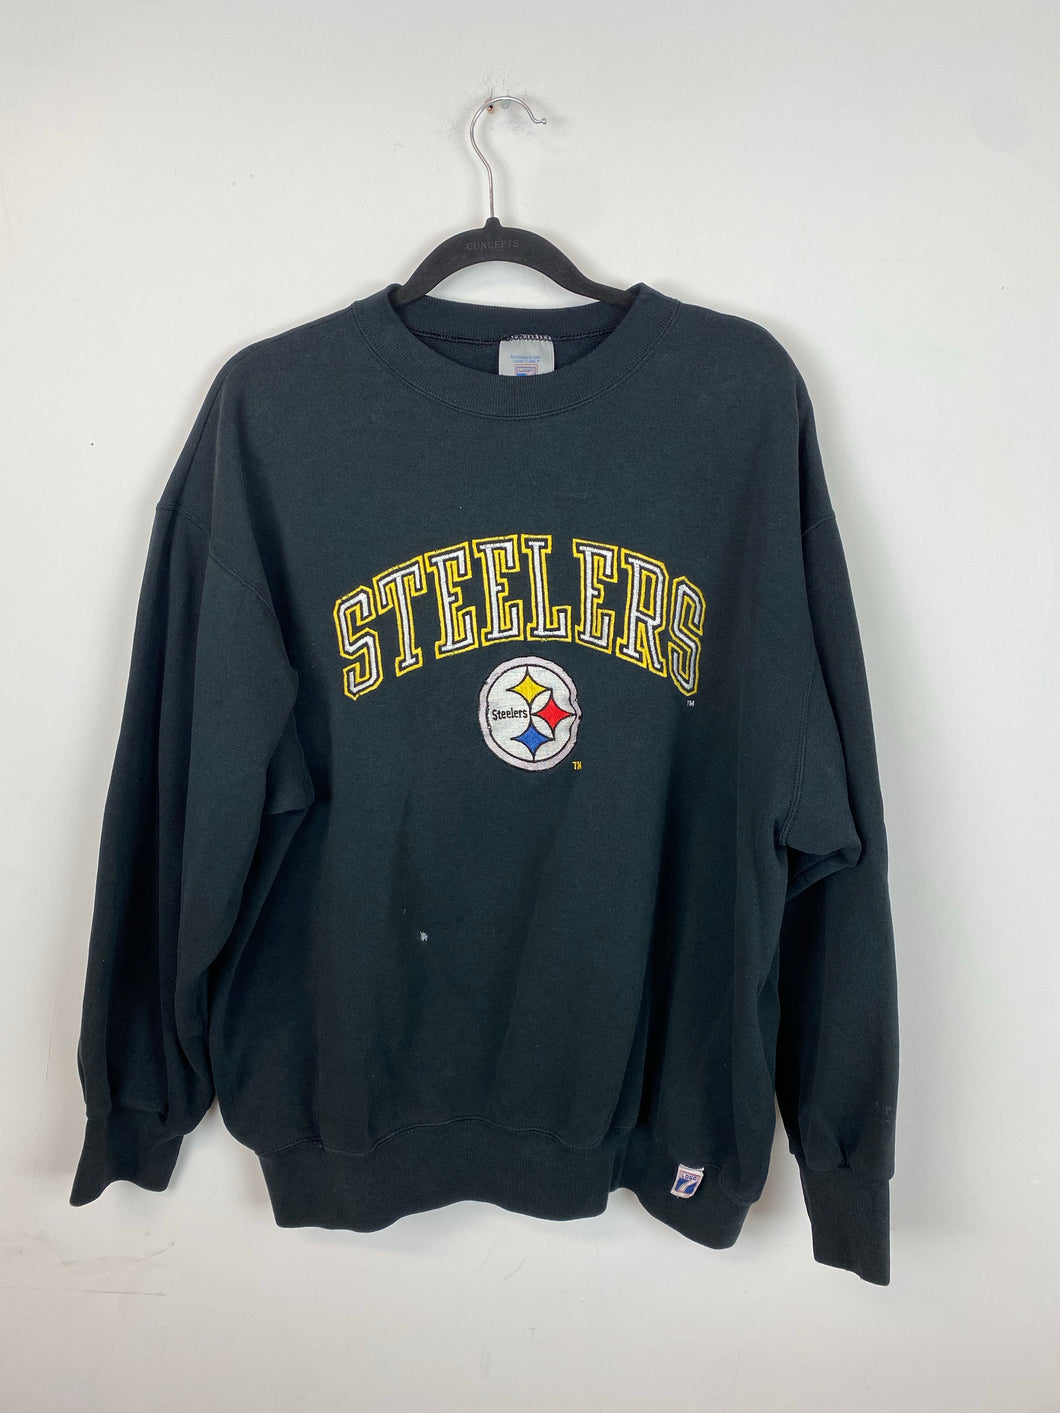 Vintage embroidered Steelers crewneck - M